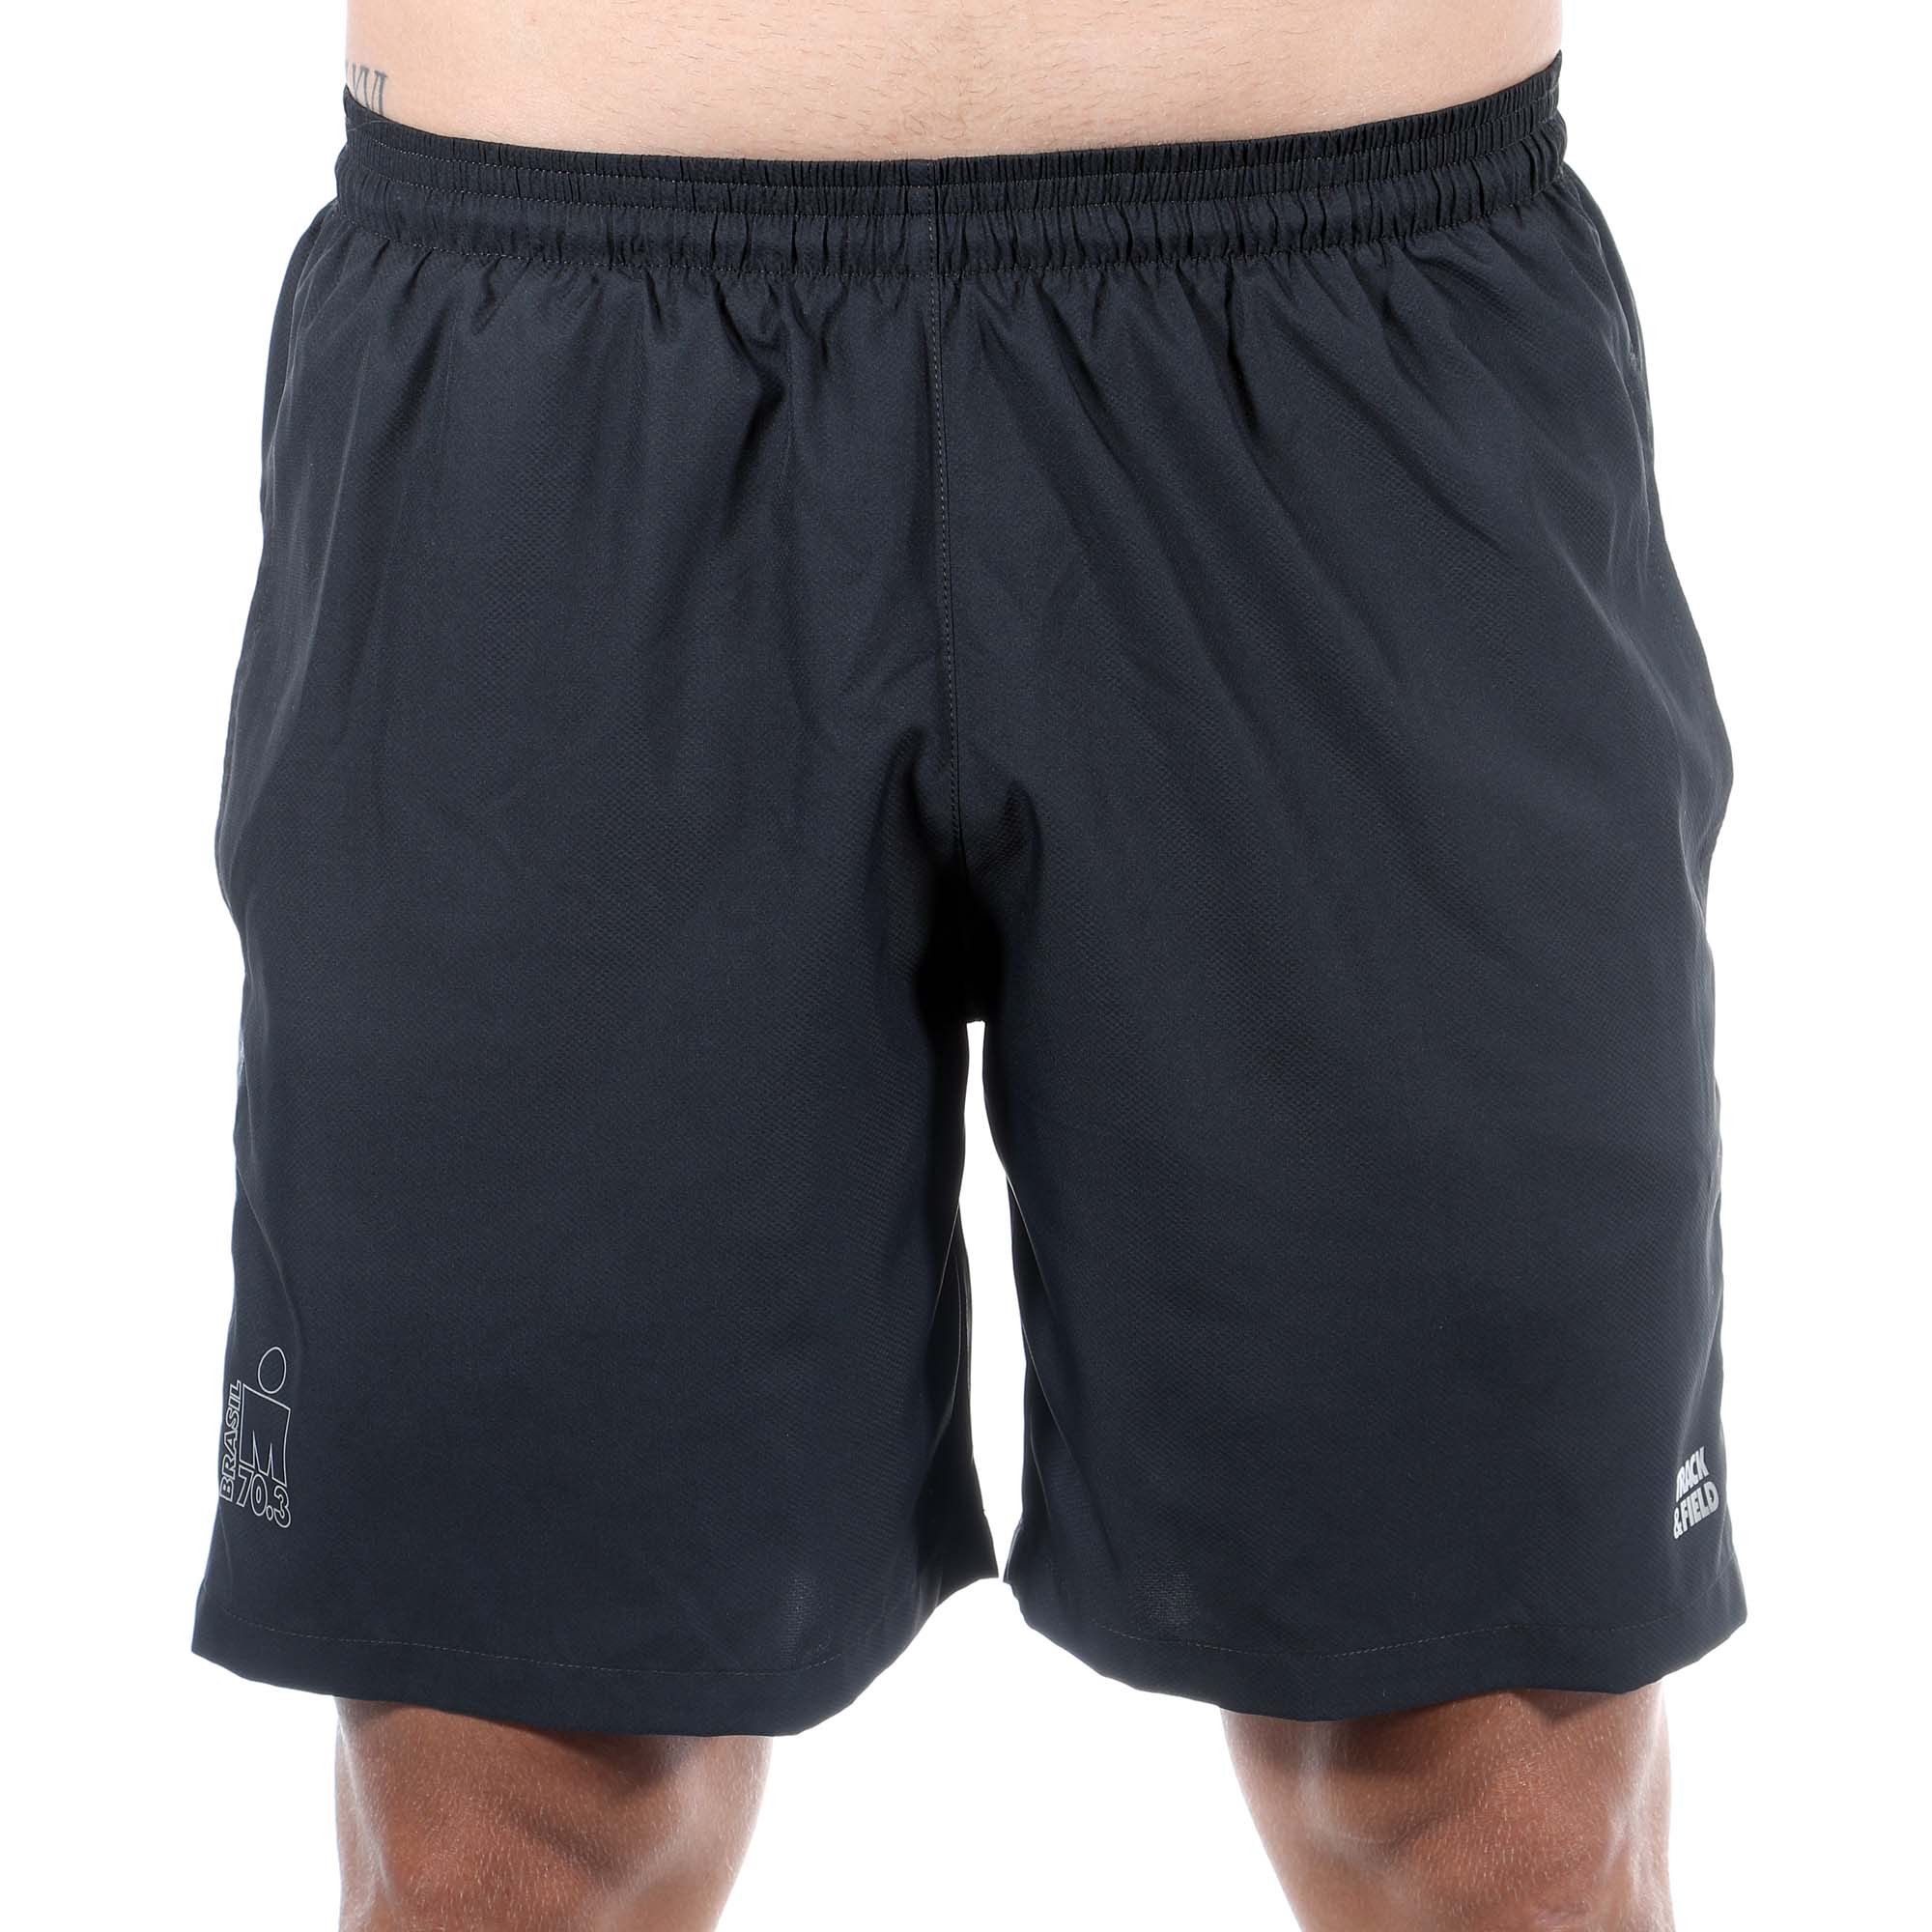 Shorts Masculino Bicolor Preto/Cinza